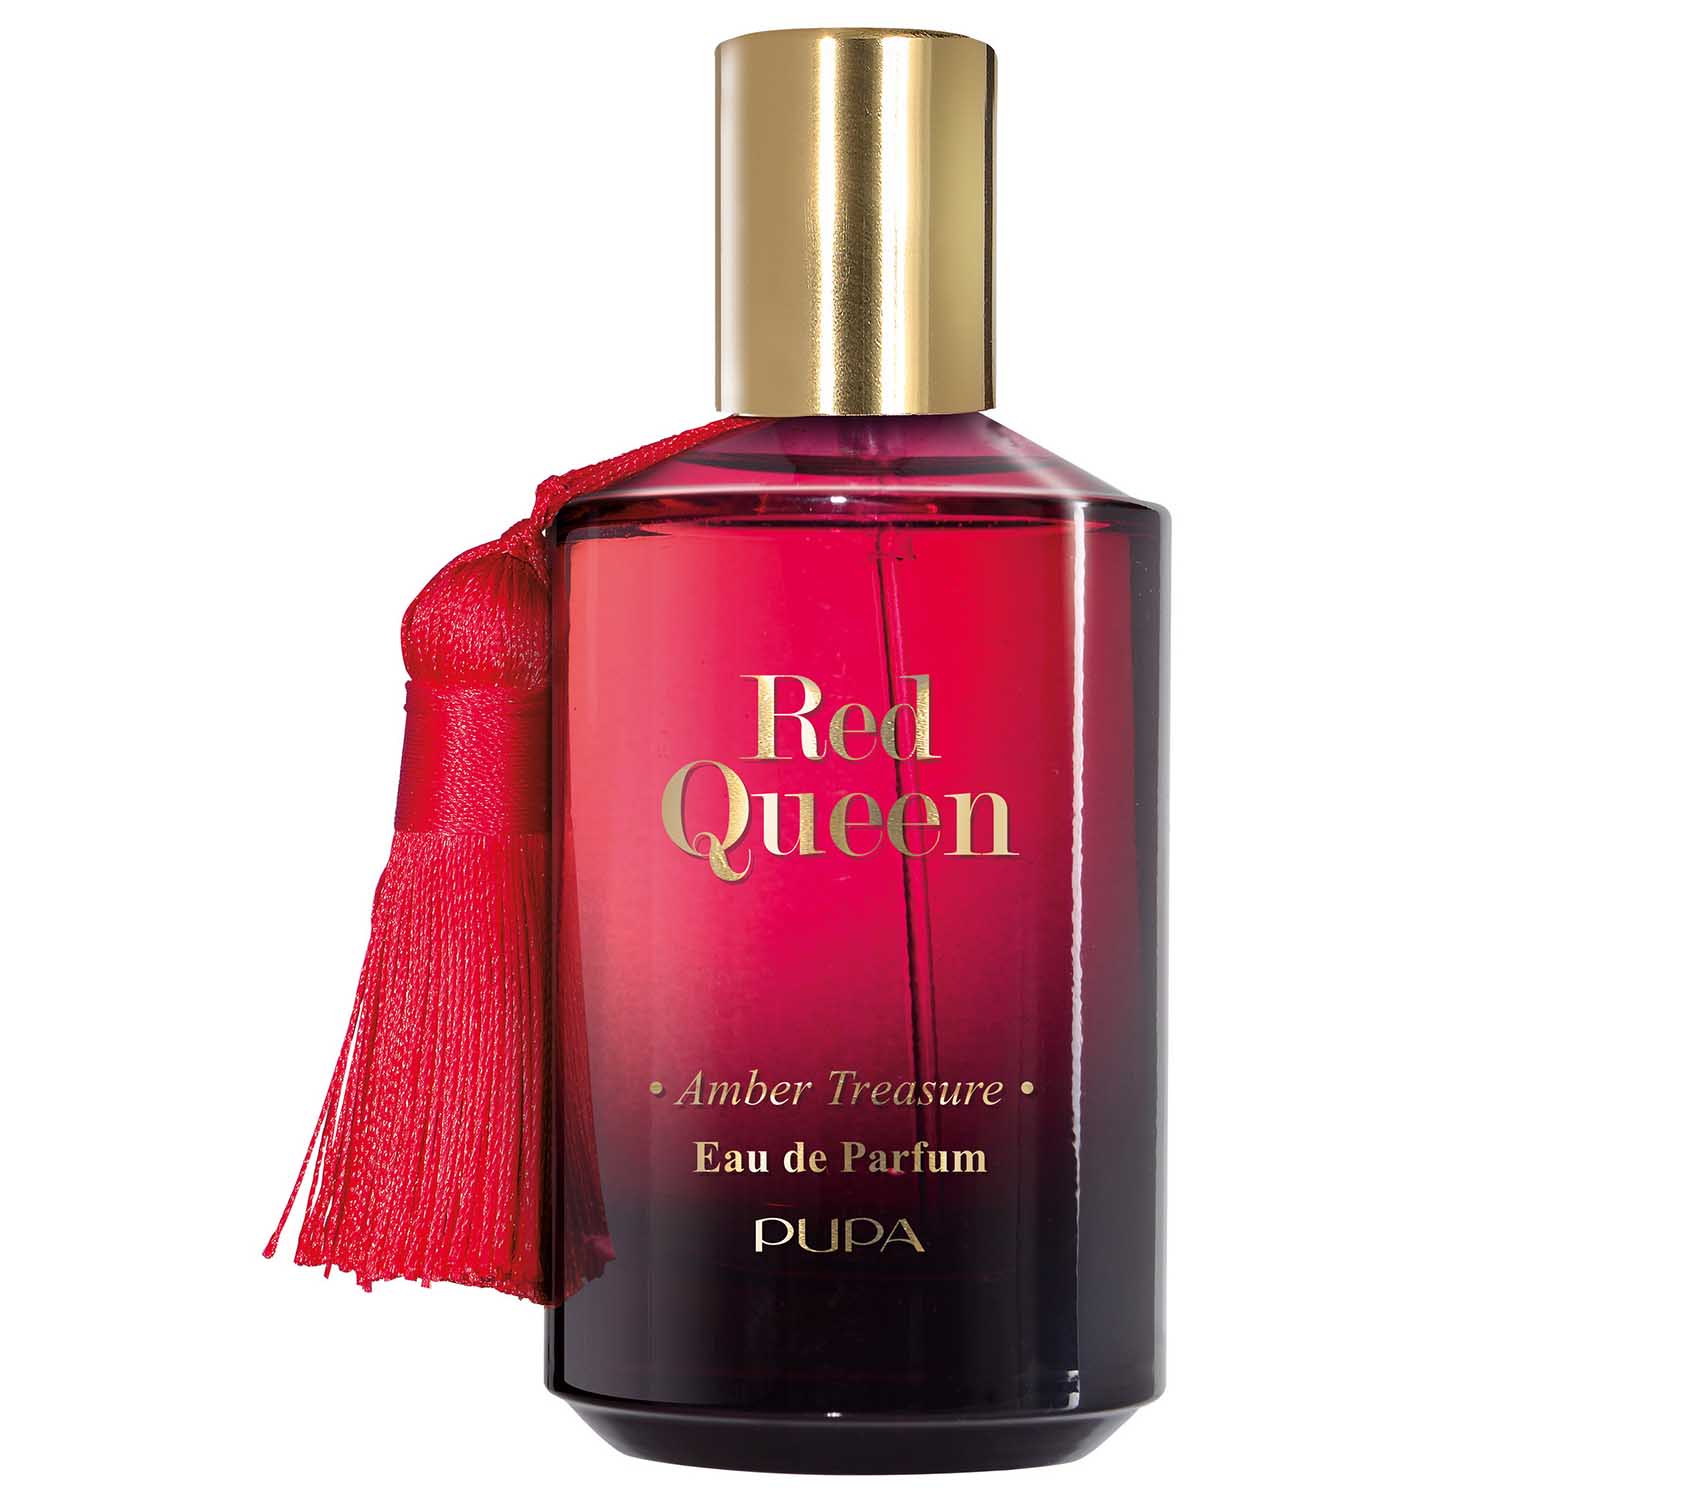 pupa red queen perfume 99 שח צילום מילן קרצמן||_כתבות_אופנה_אופנה